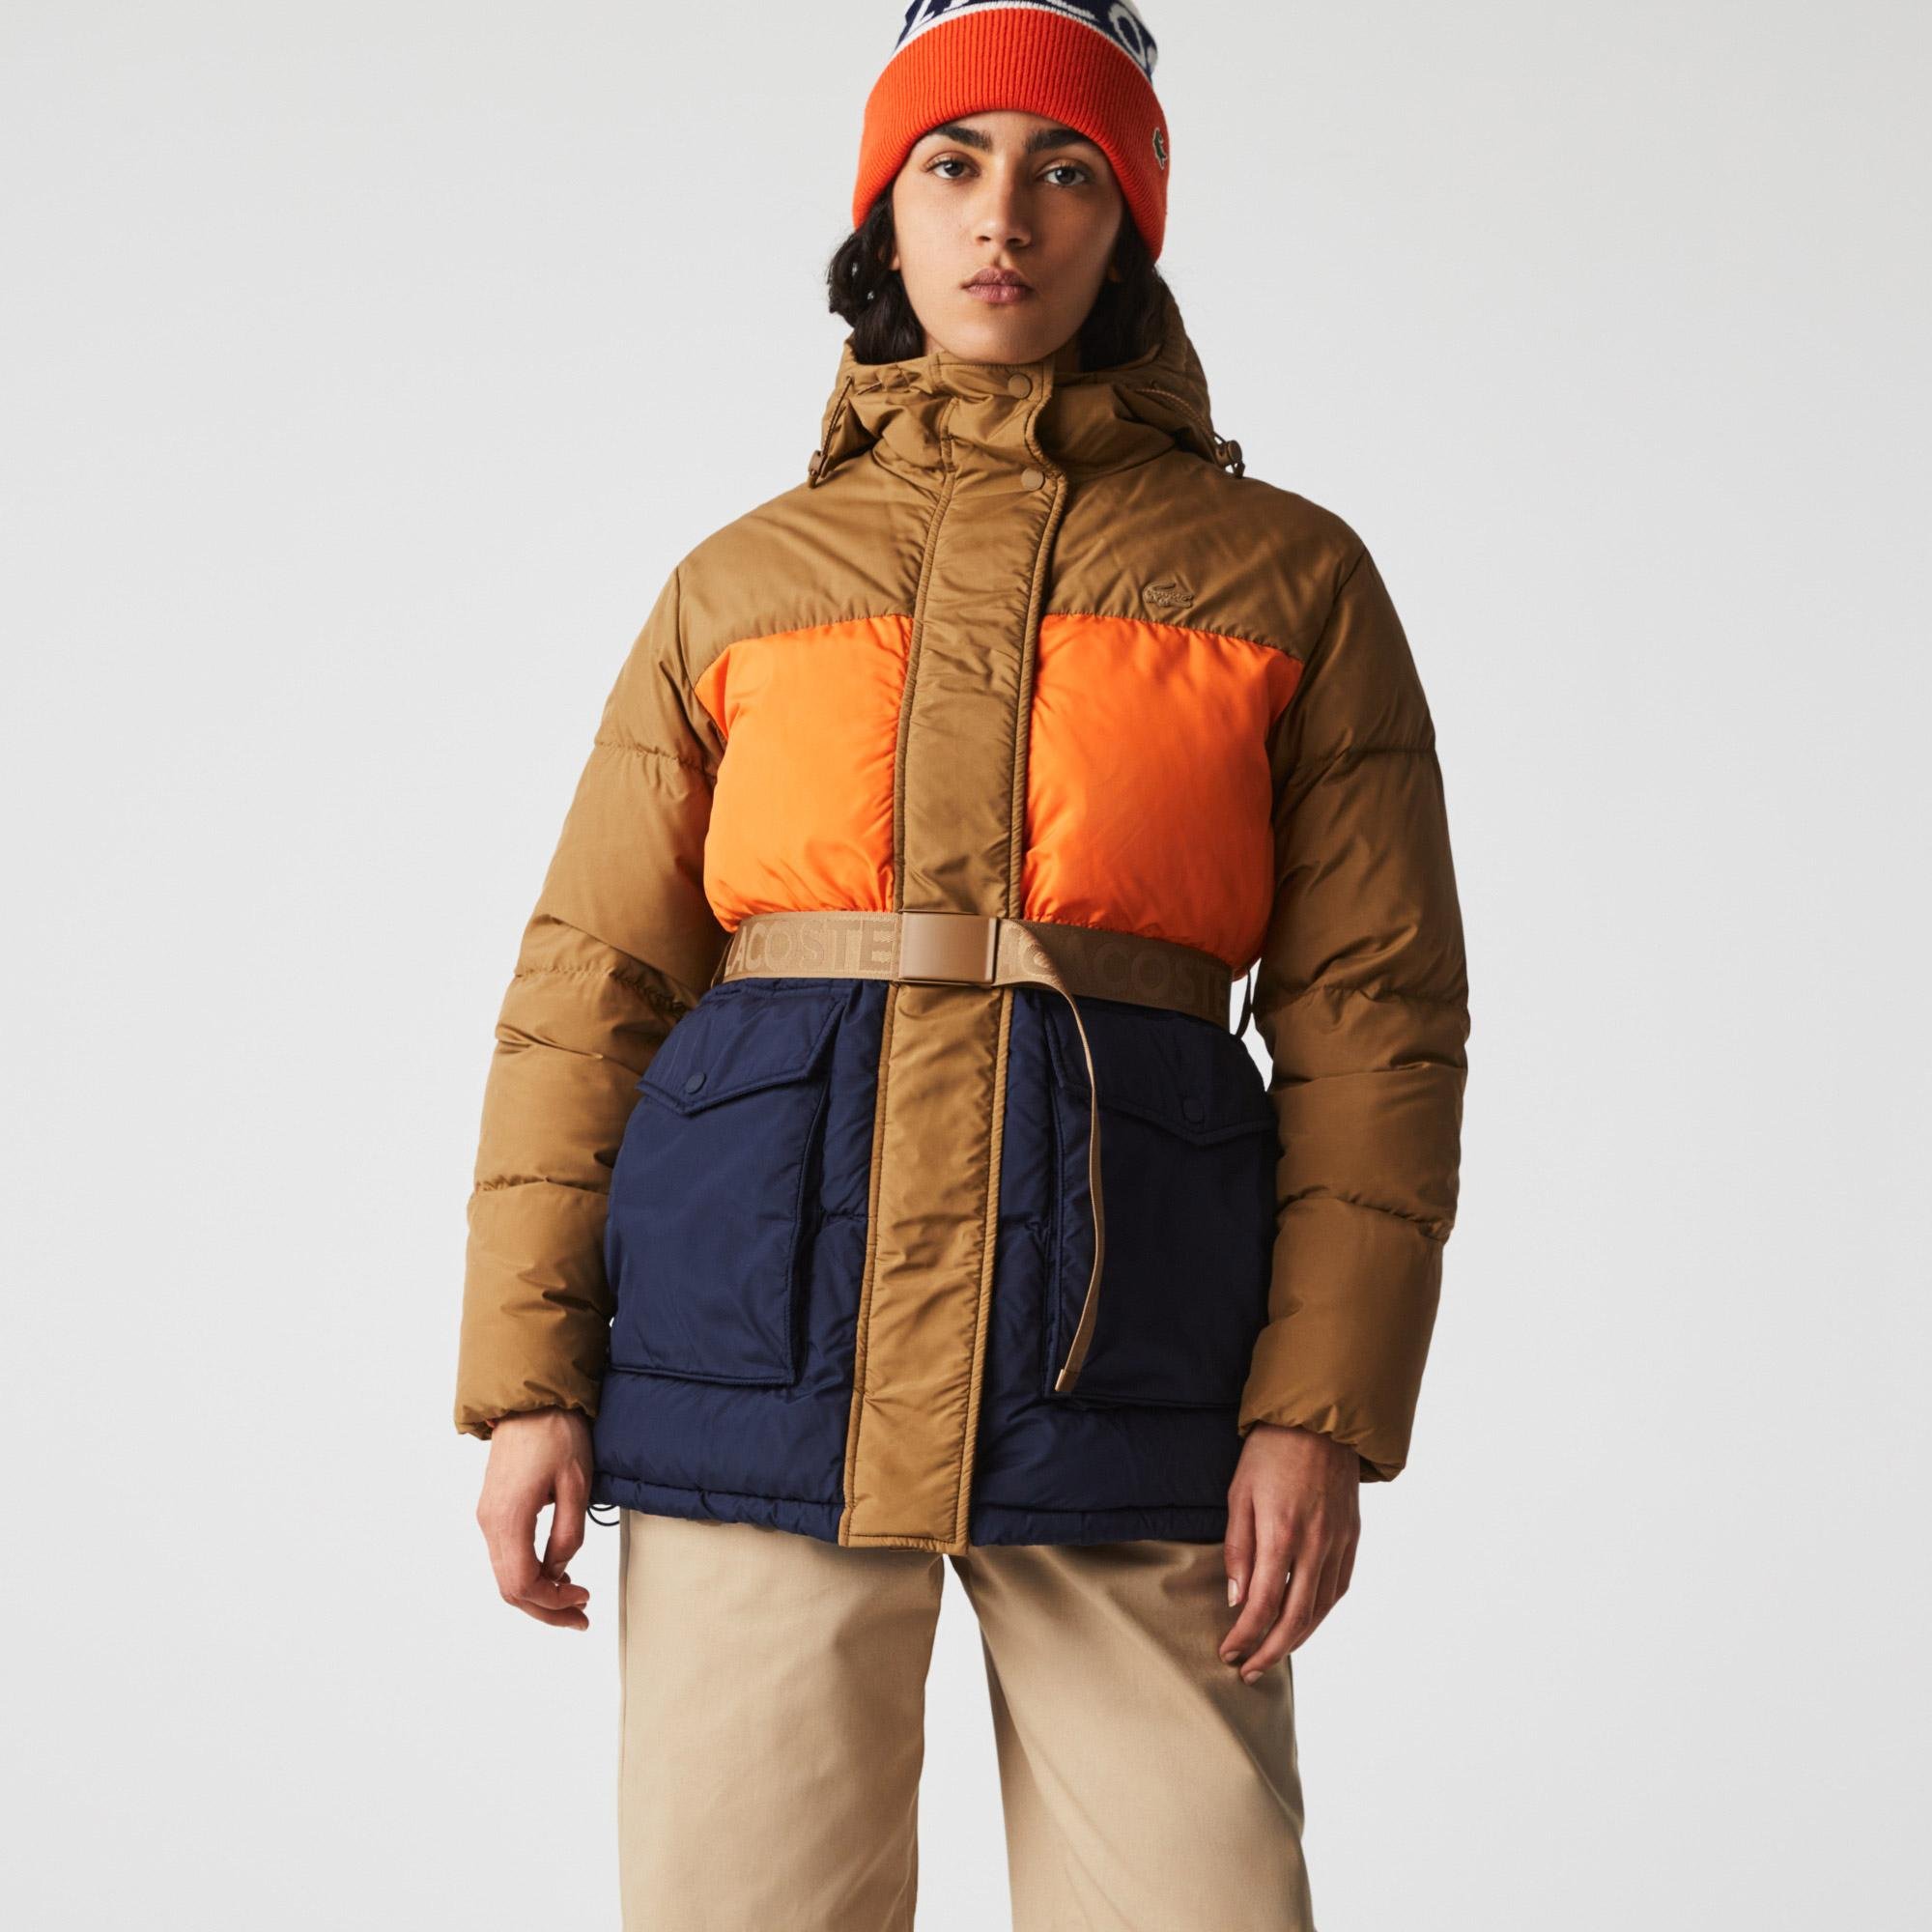 Lacoste dámská prošívaná bunda s kapucí a s barevnými pásy